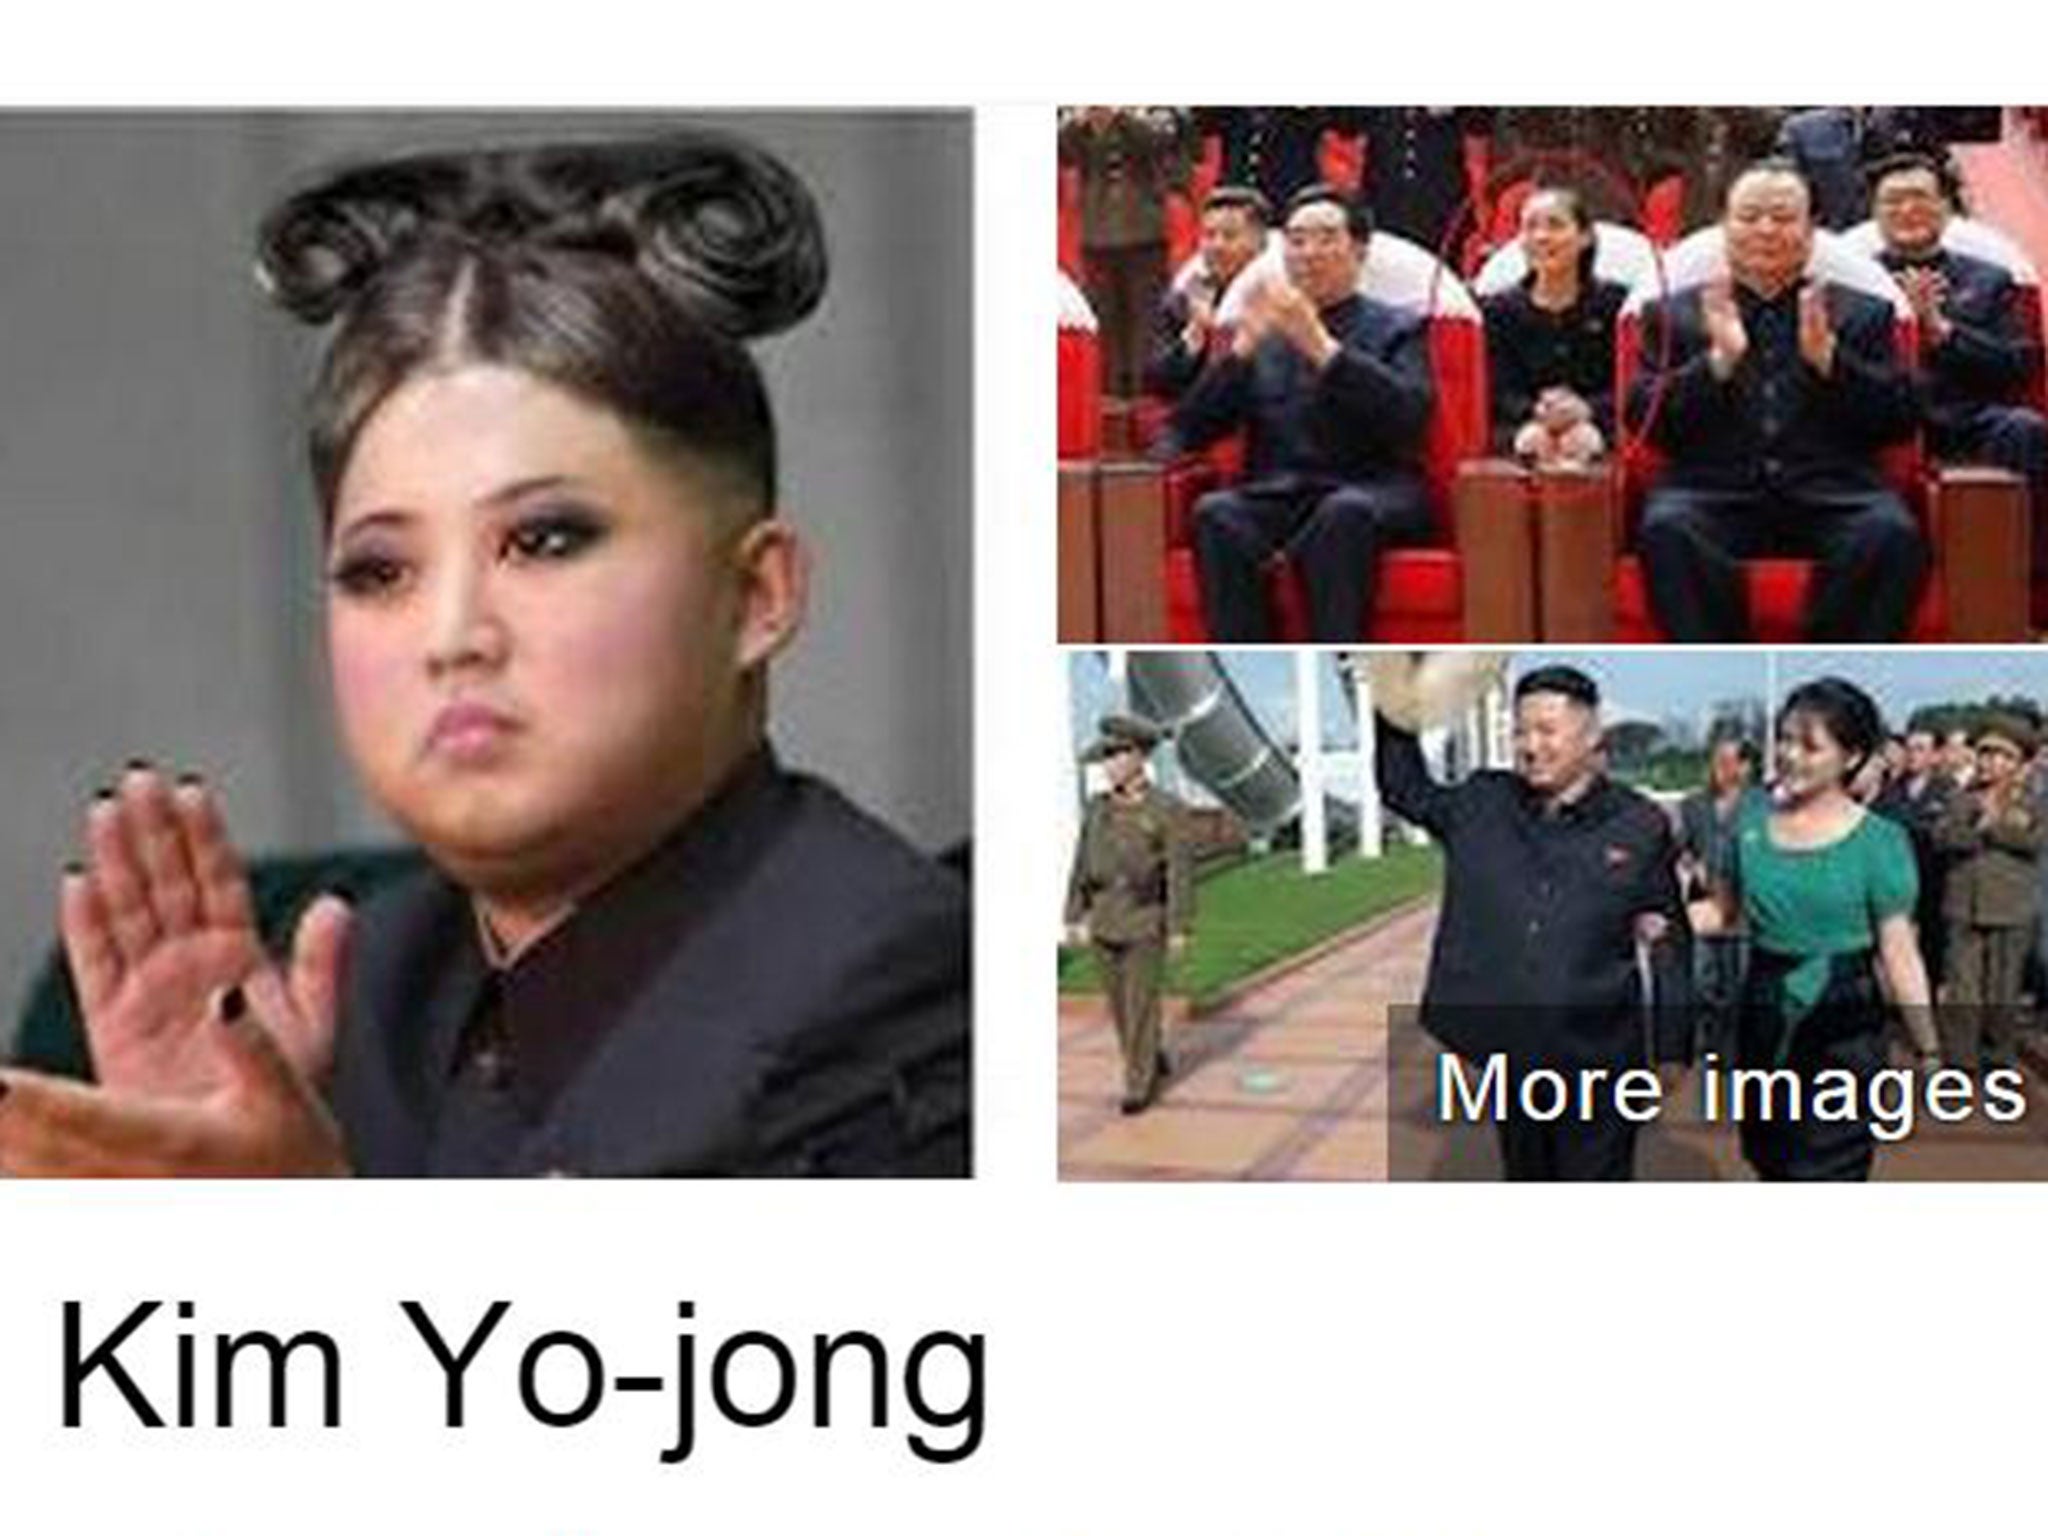 Kim Jong-un's sister Kim Yo-jong, as pictured on Google